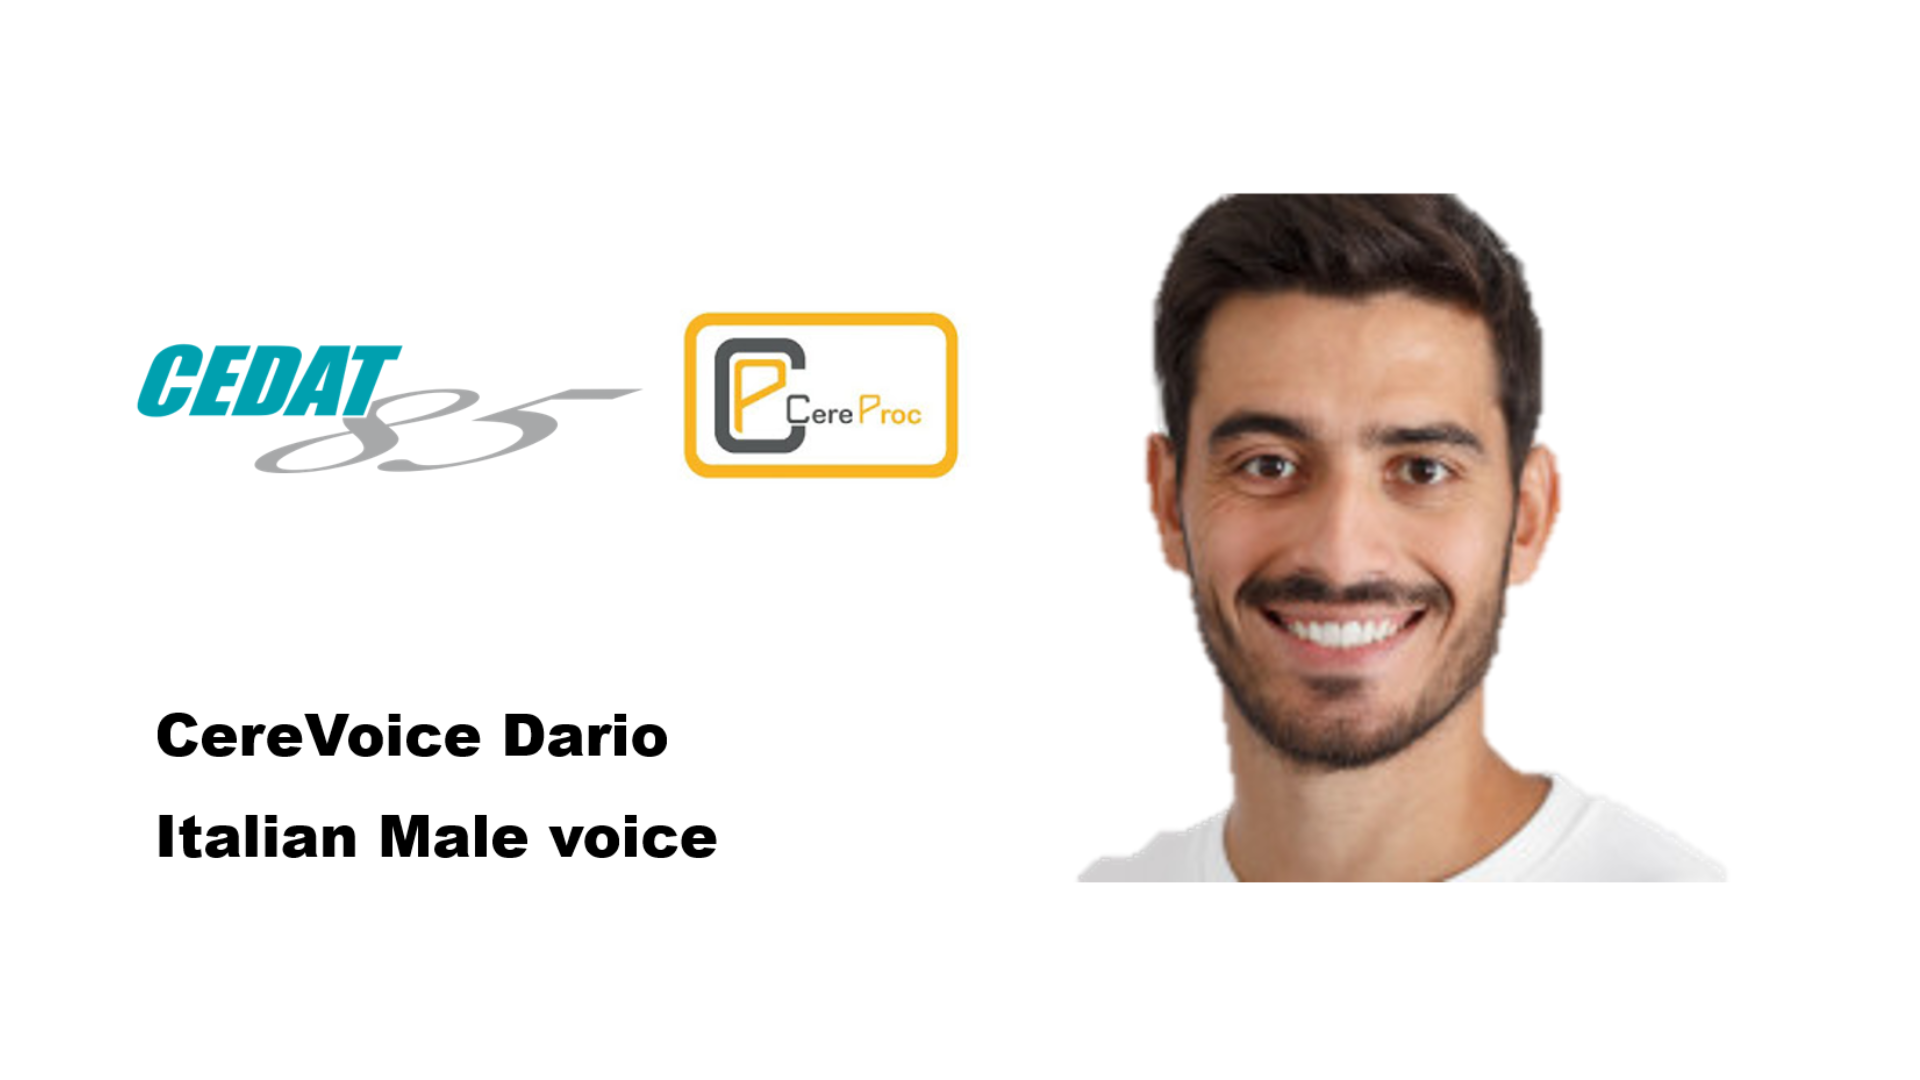 Immagine che mostra il volto di un giovane uomo che impersona la voce dell'assistente digitale "Dario"